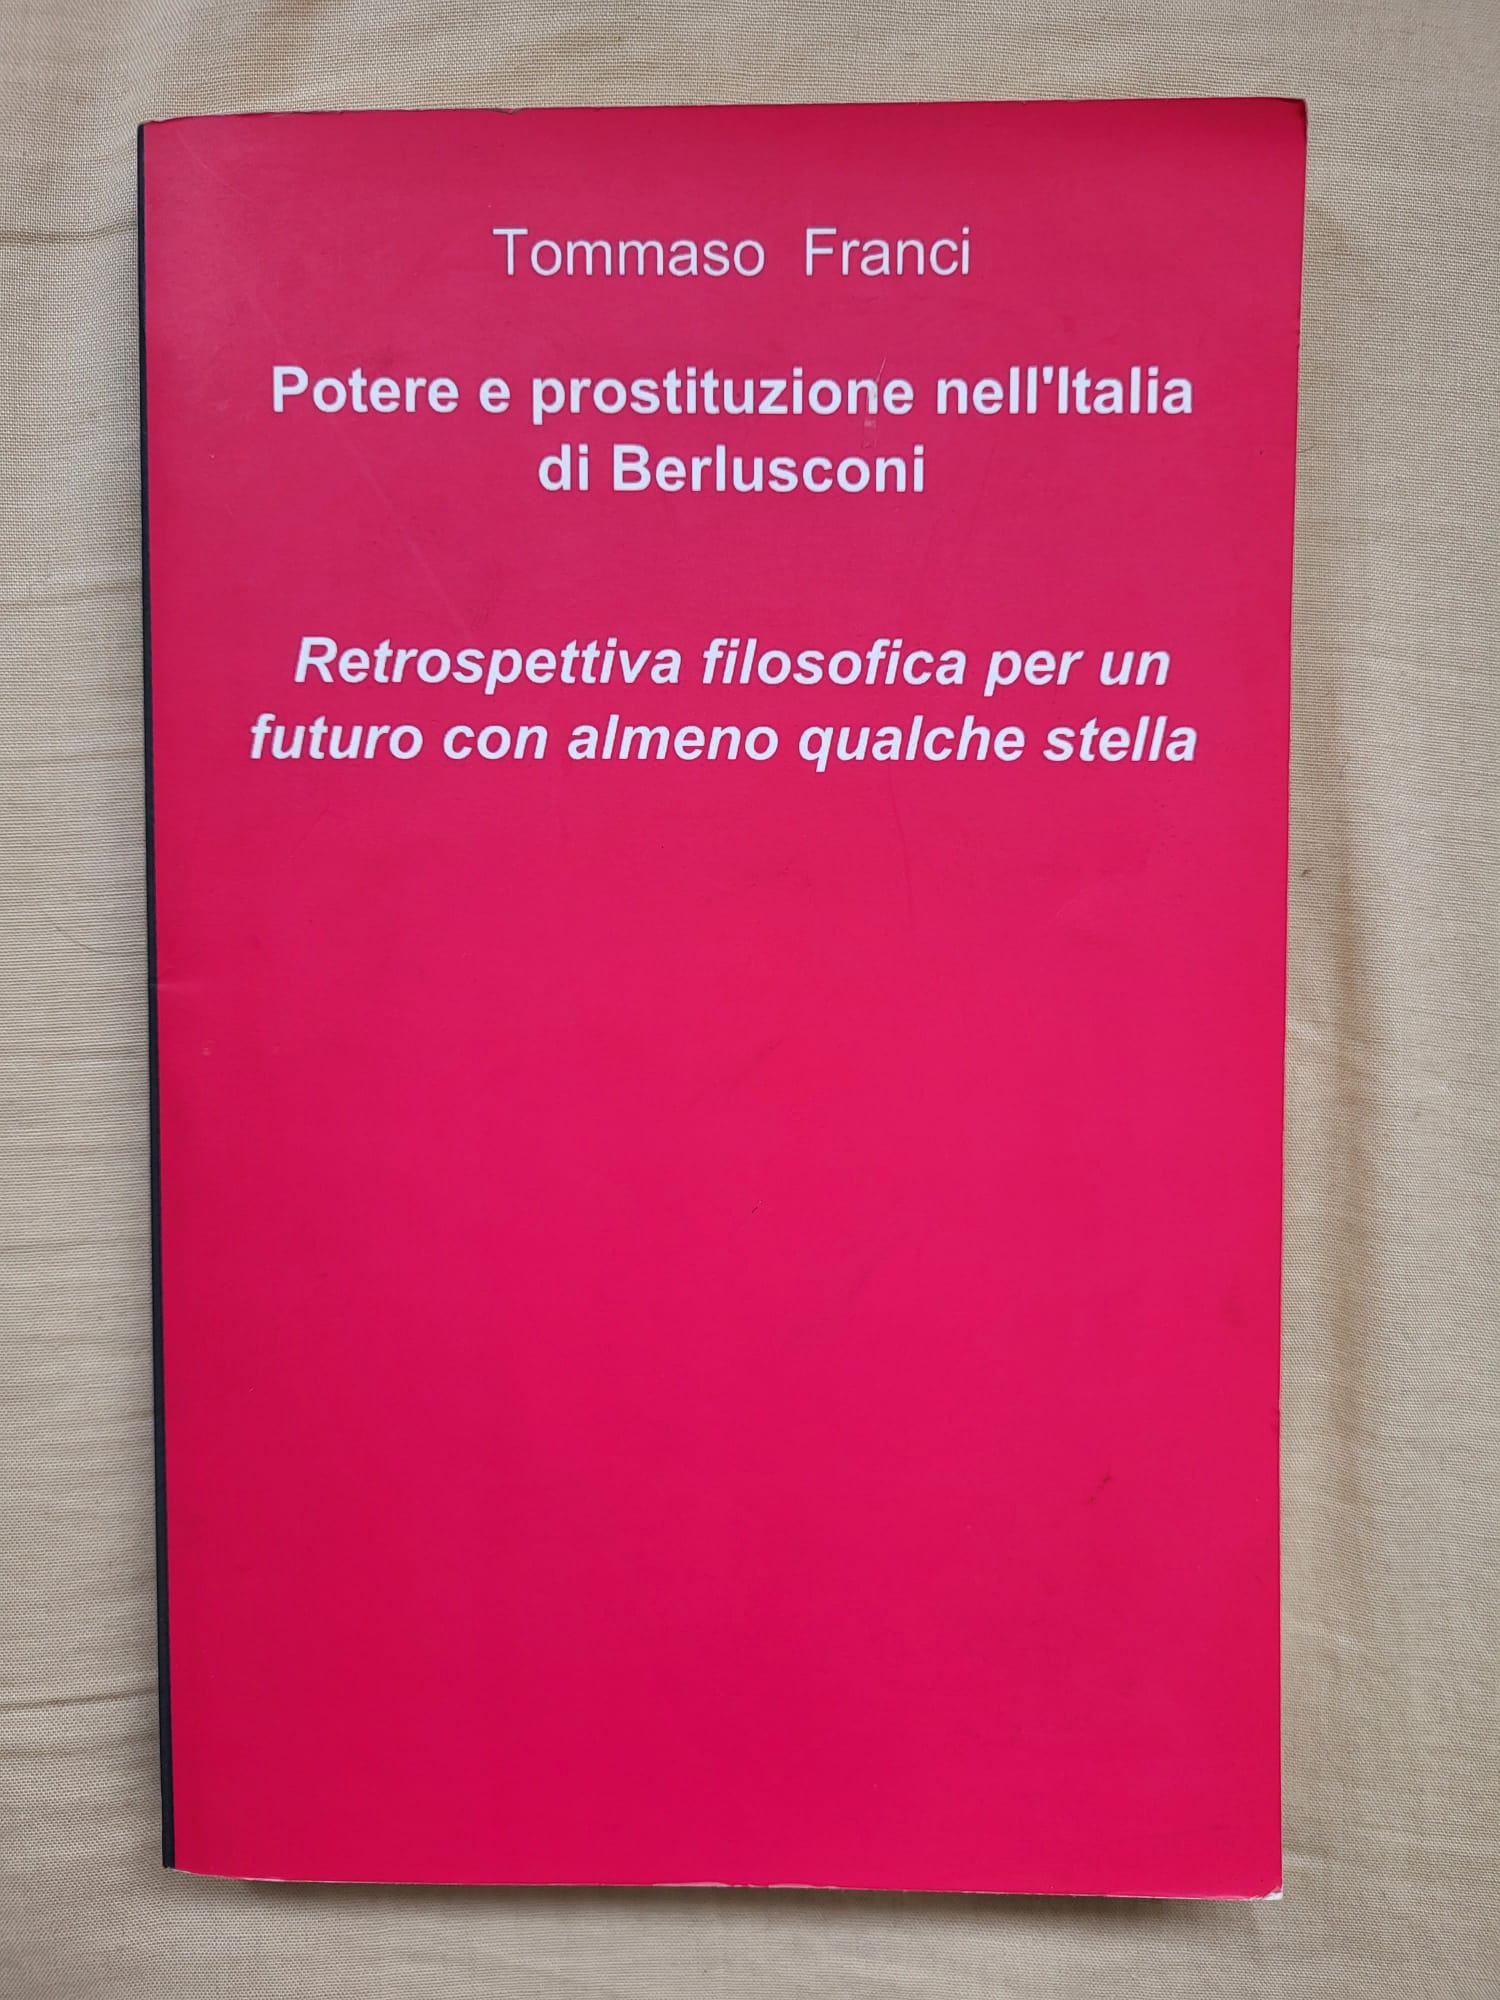 Introvabile la prima edizione (in formato cartaceo) del libro di Tommaso Franci: un’introduzione ragionata al Movimento 5 Stelle